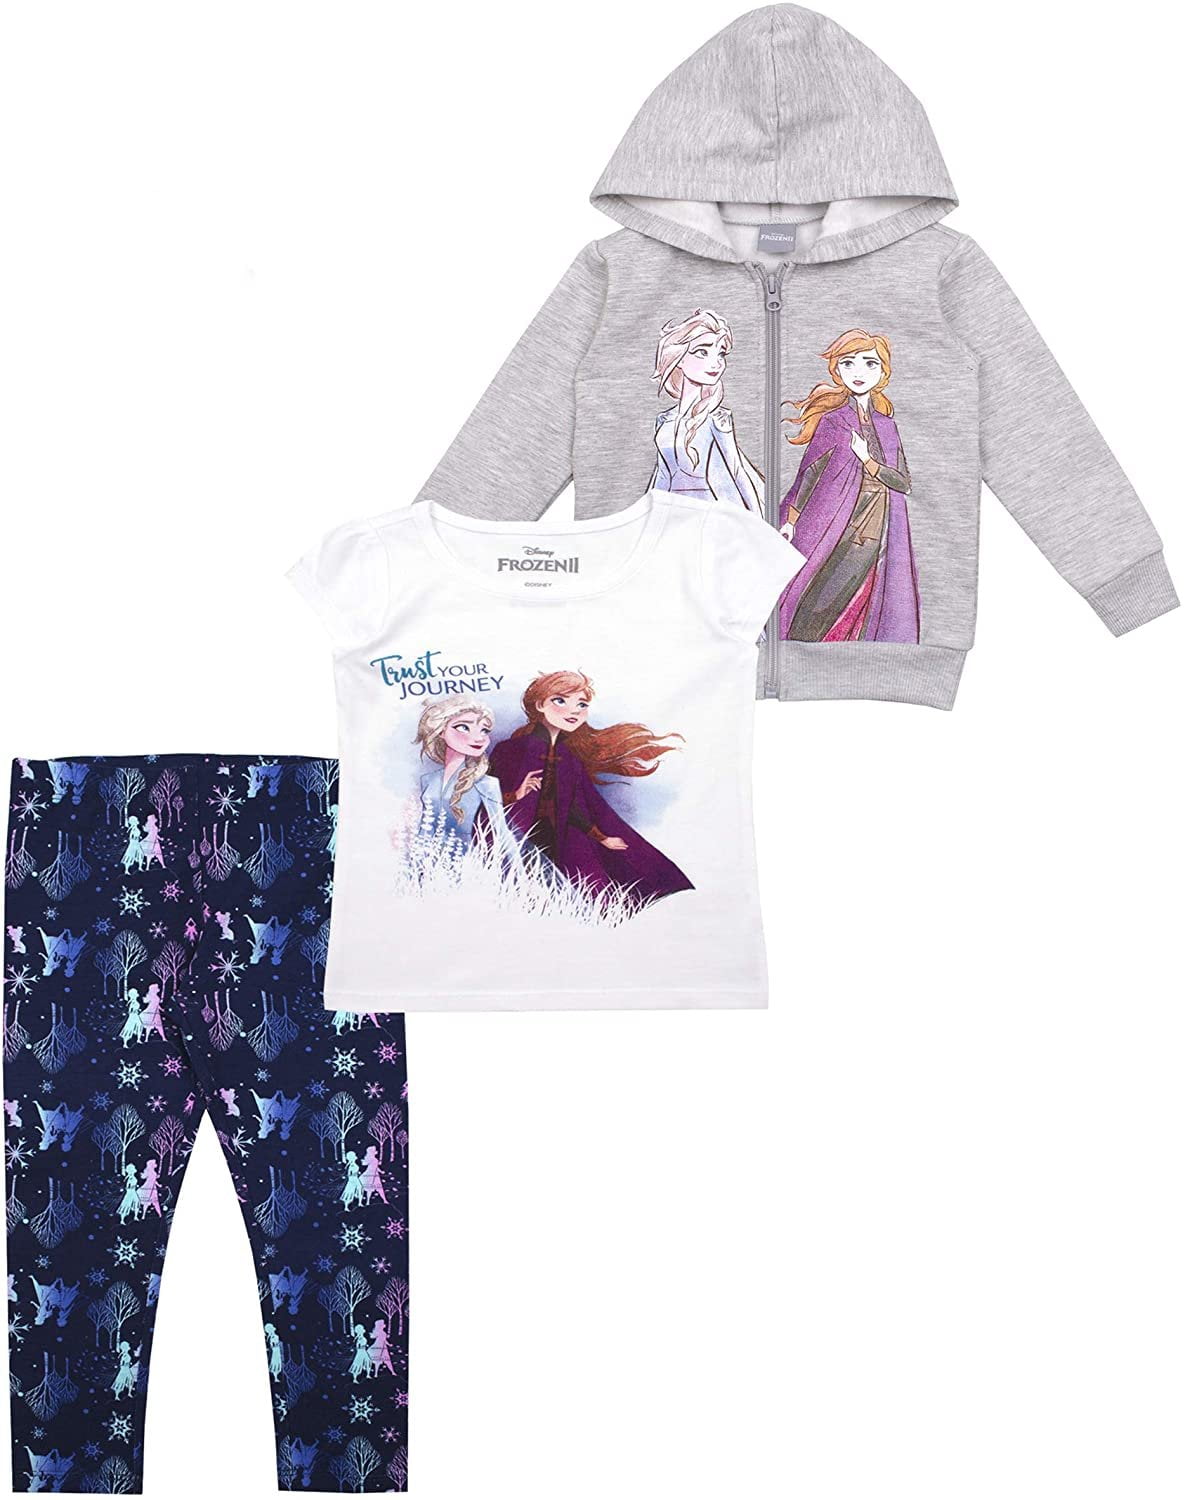 Personalised Elsa Frozen Hooded Top Girls Hoodie Custom Gifts 